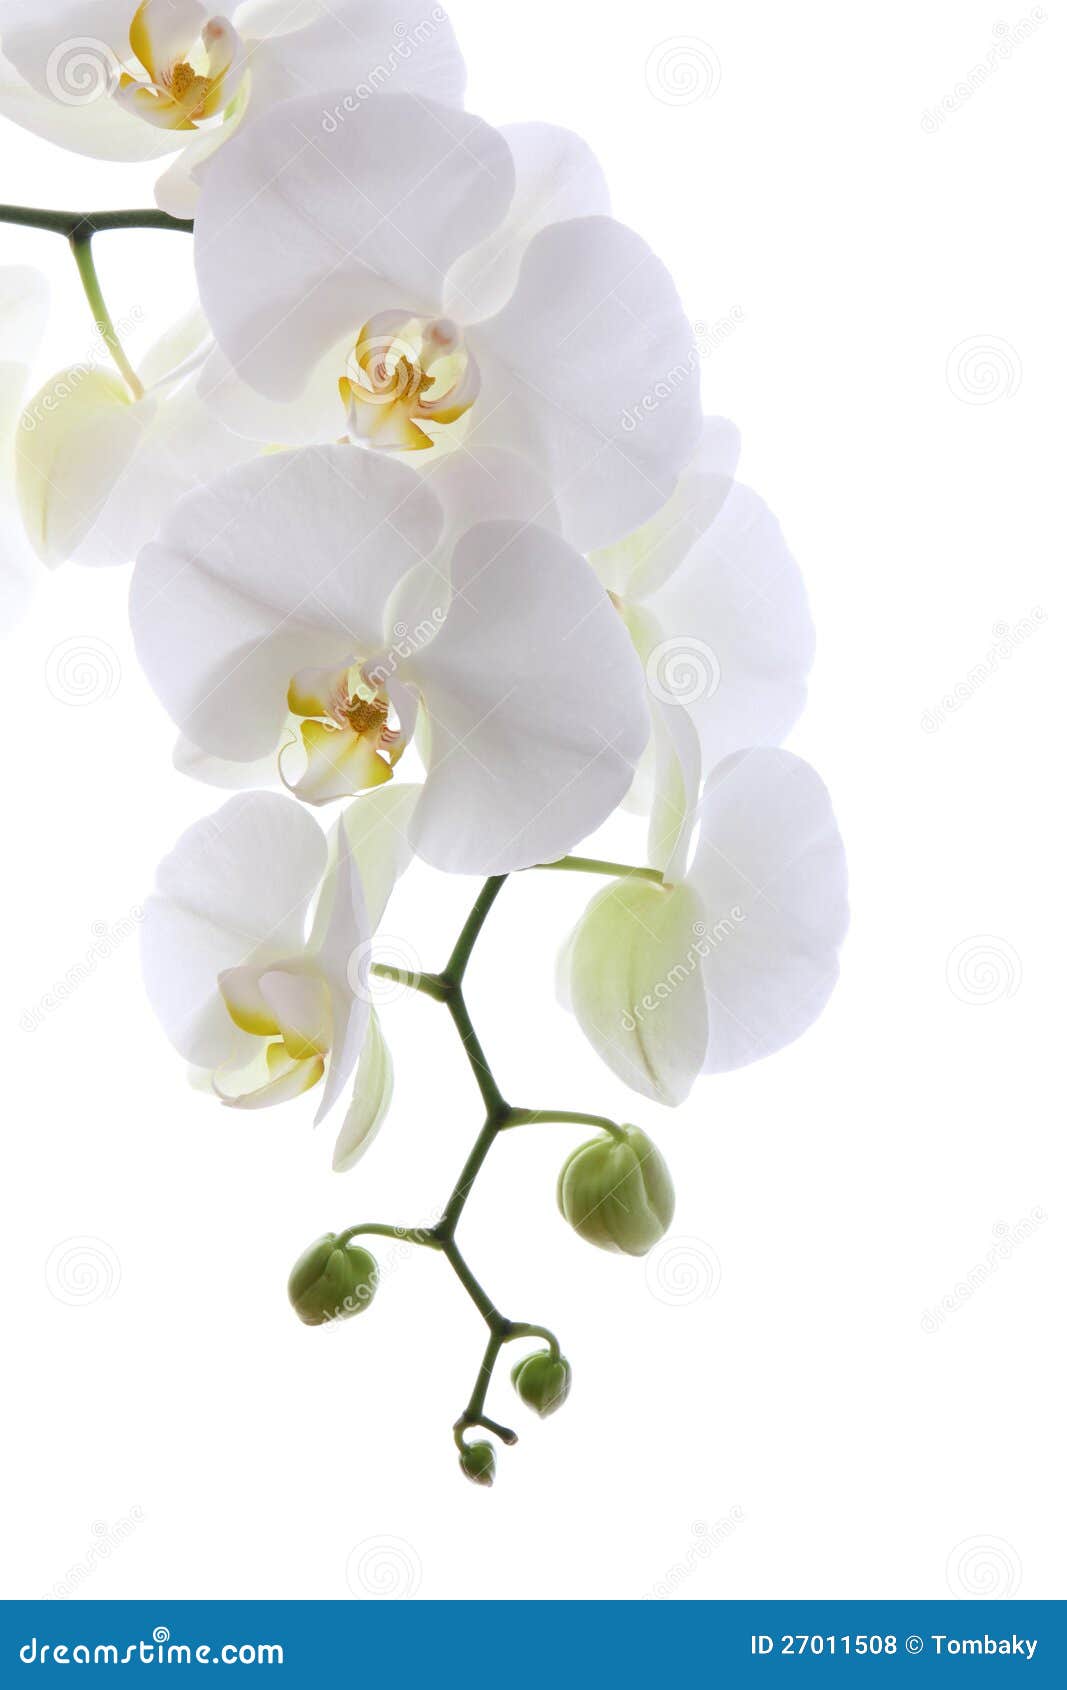 Voorwaardelijk Hol motto Witte orchidee stock foto. Image of achtergrond, zuiver - 27011508